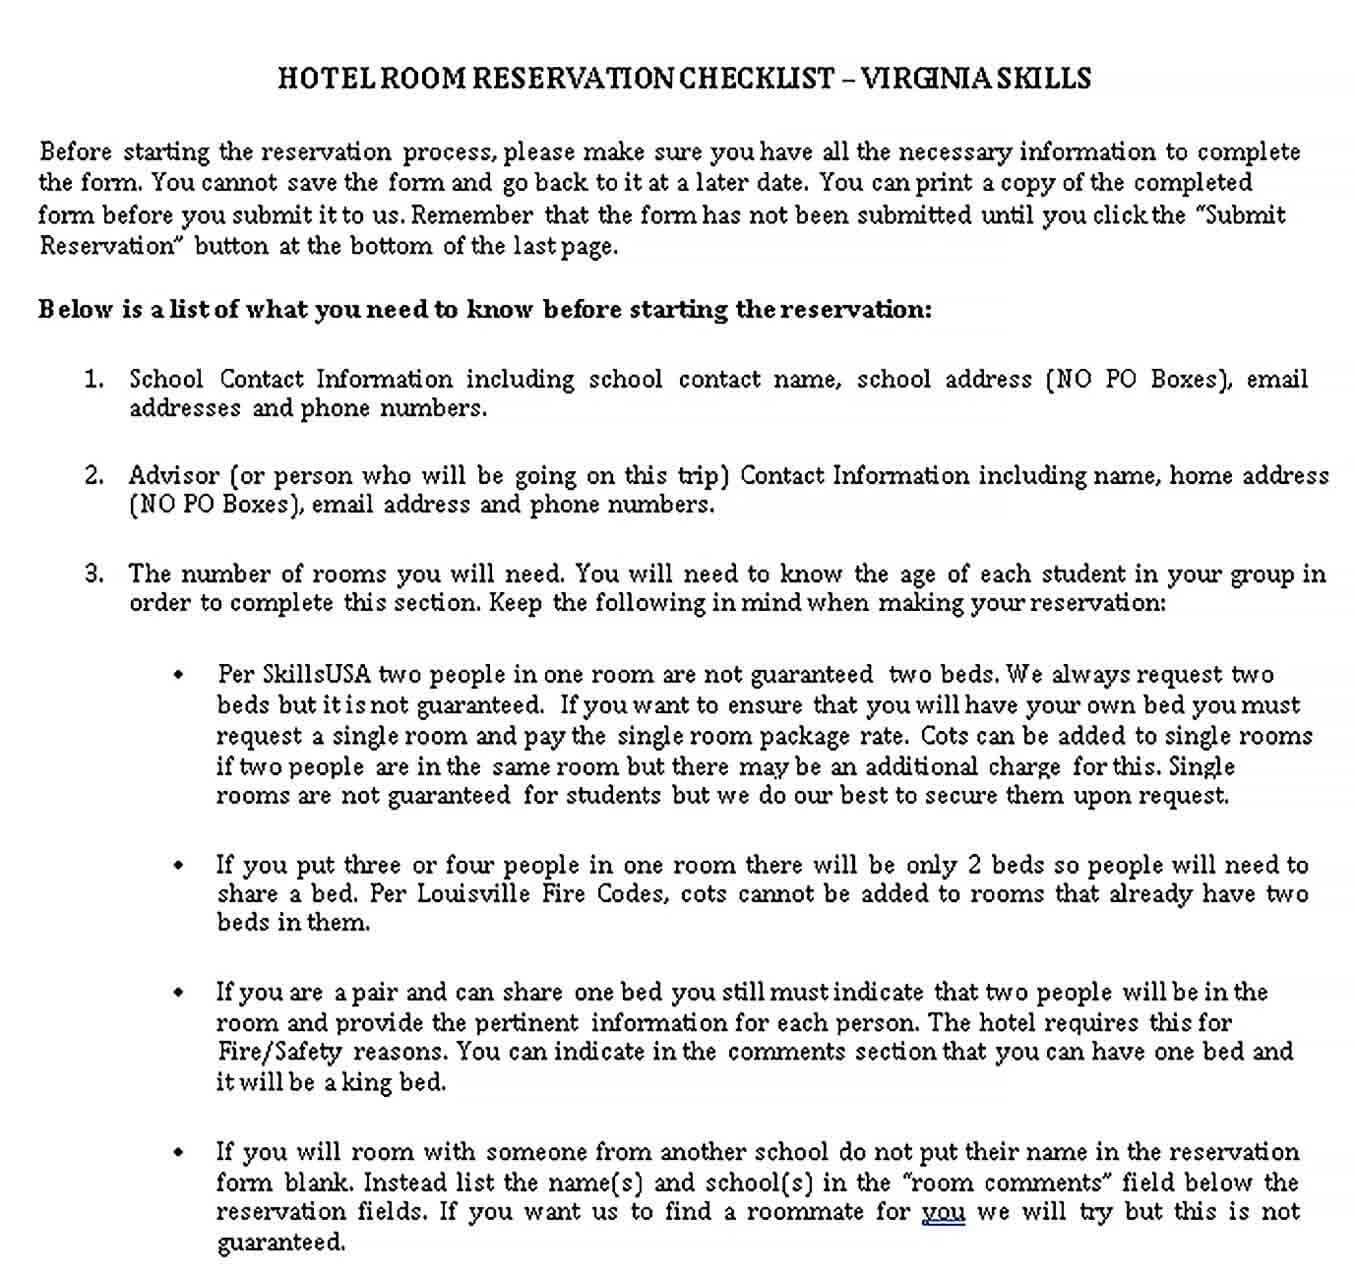 Sample Hotel Checklist for Reservation